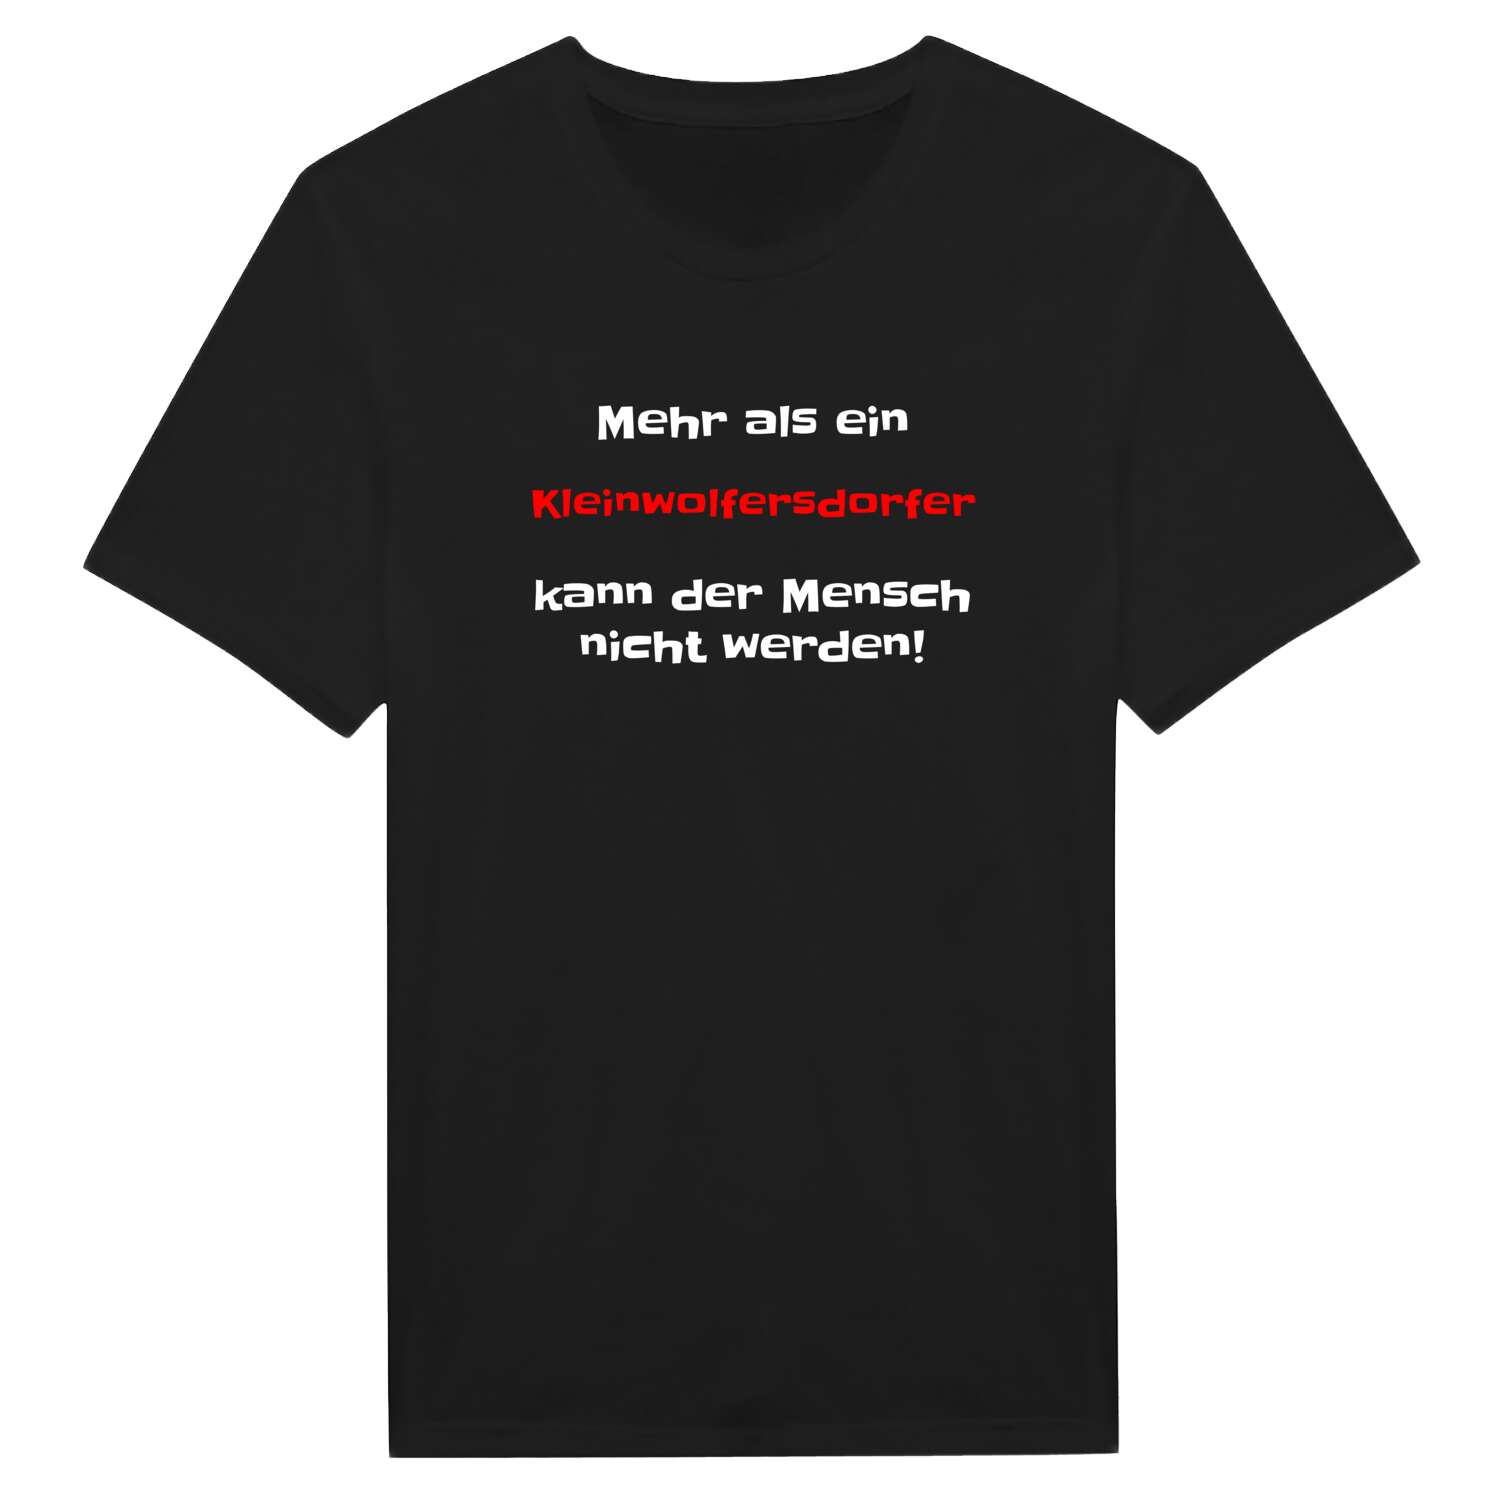 Kleinwolfersdorf T-Shirt »Mehr als ein«